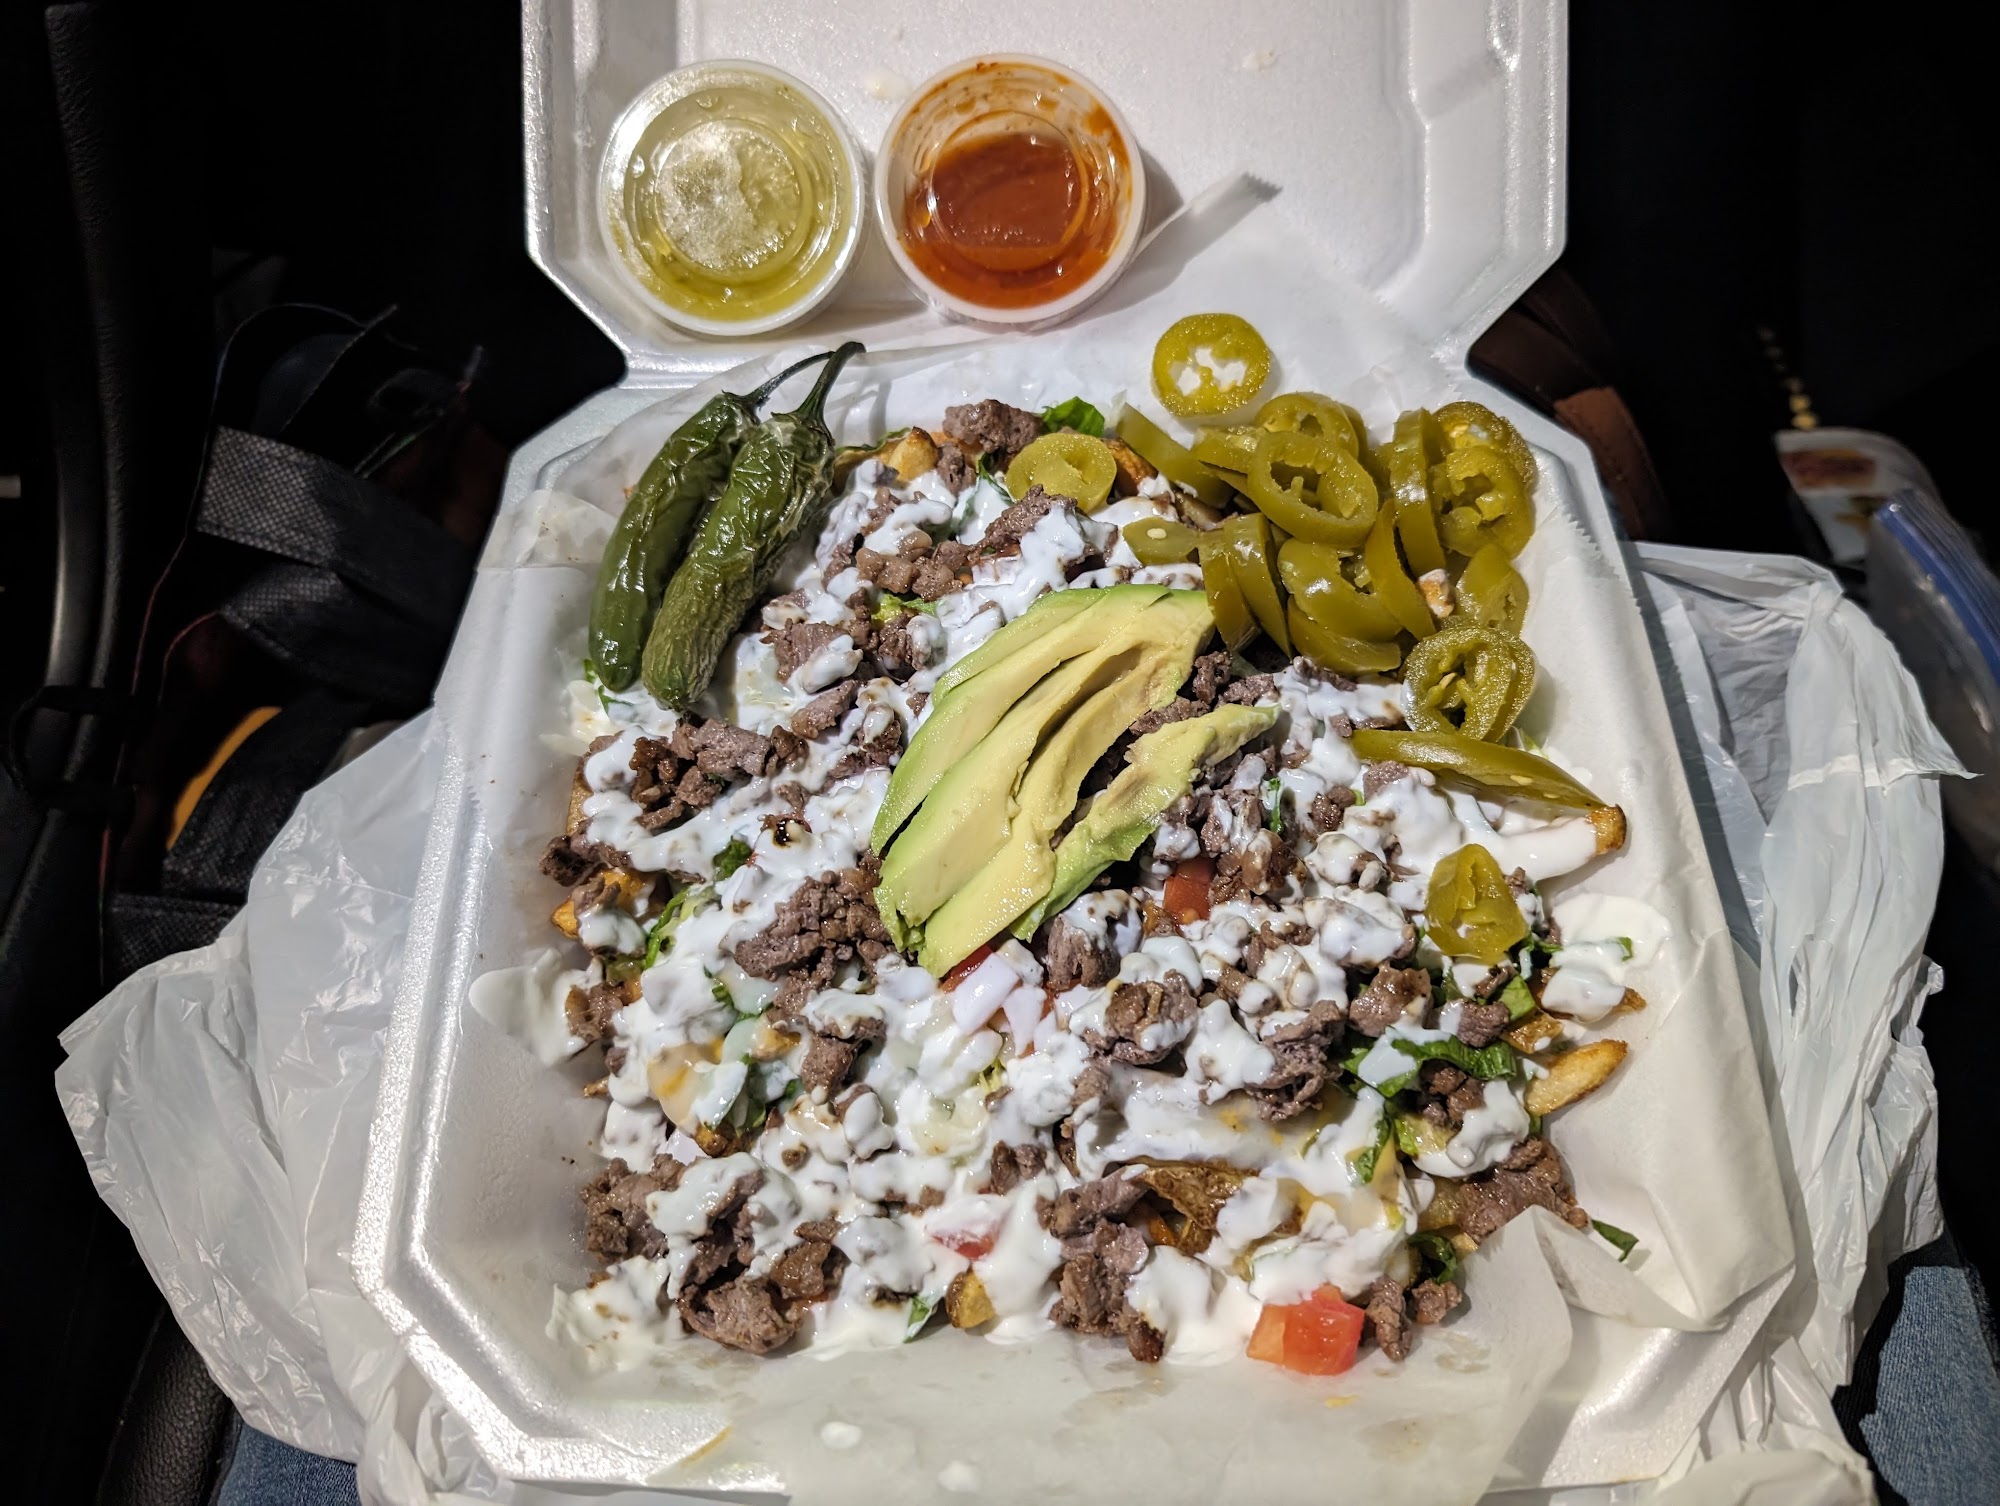 The Fiesta Grill (Food Truck)